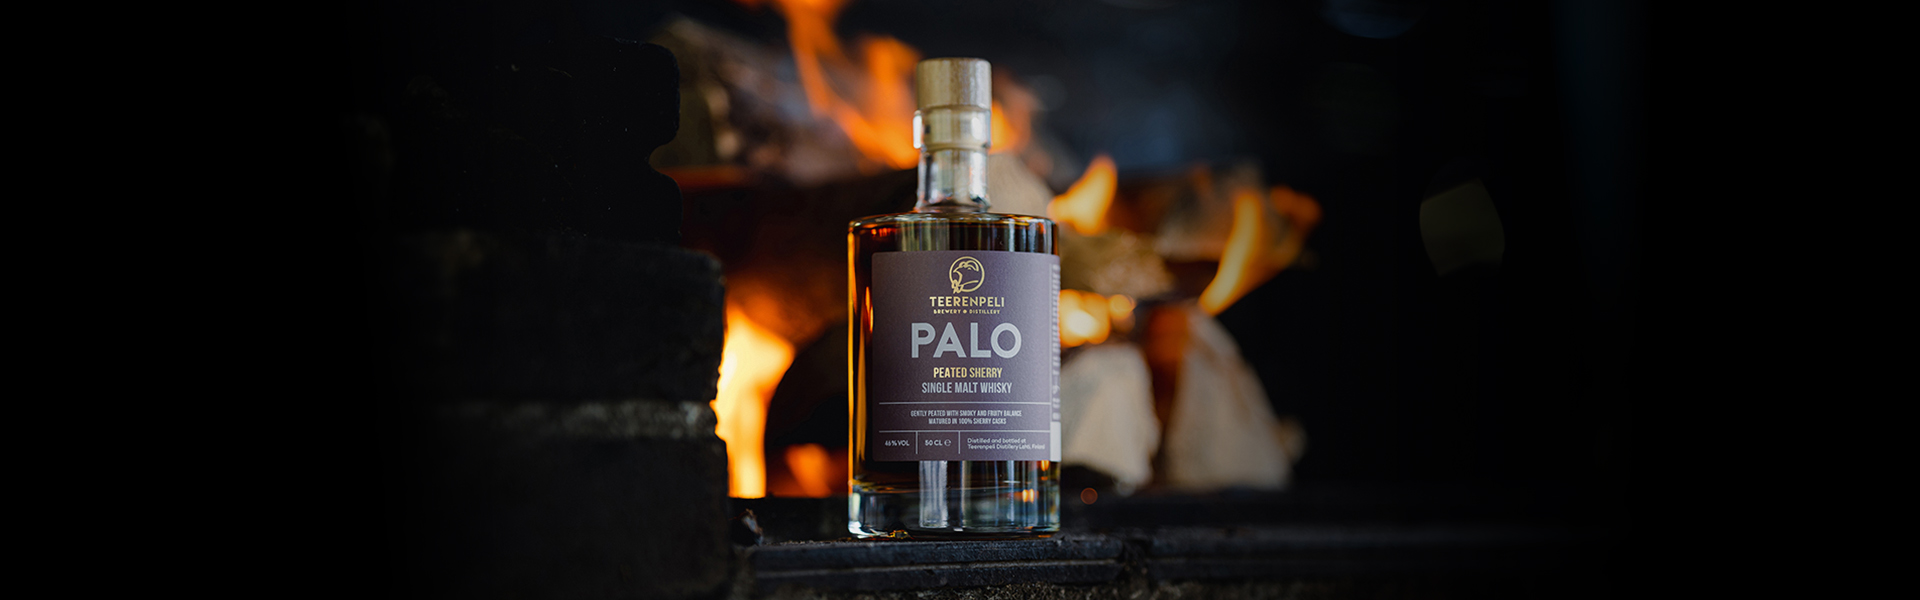 Teerenpeli PALO Single Malt Whisky – ett eldigt finskt lejon höljd i rök!